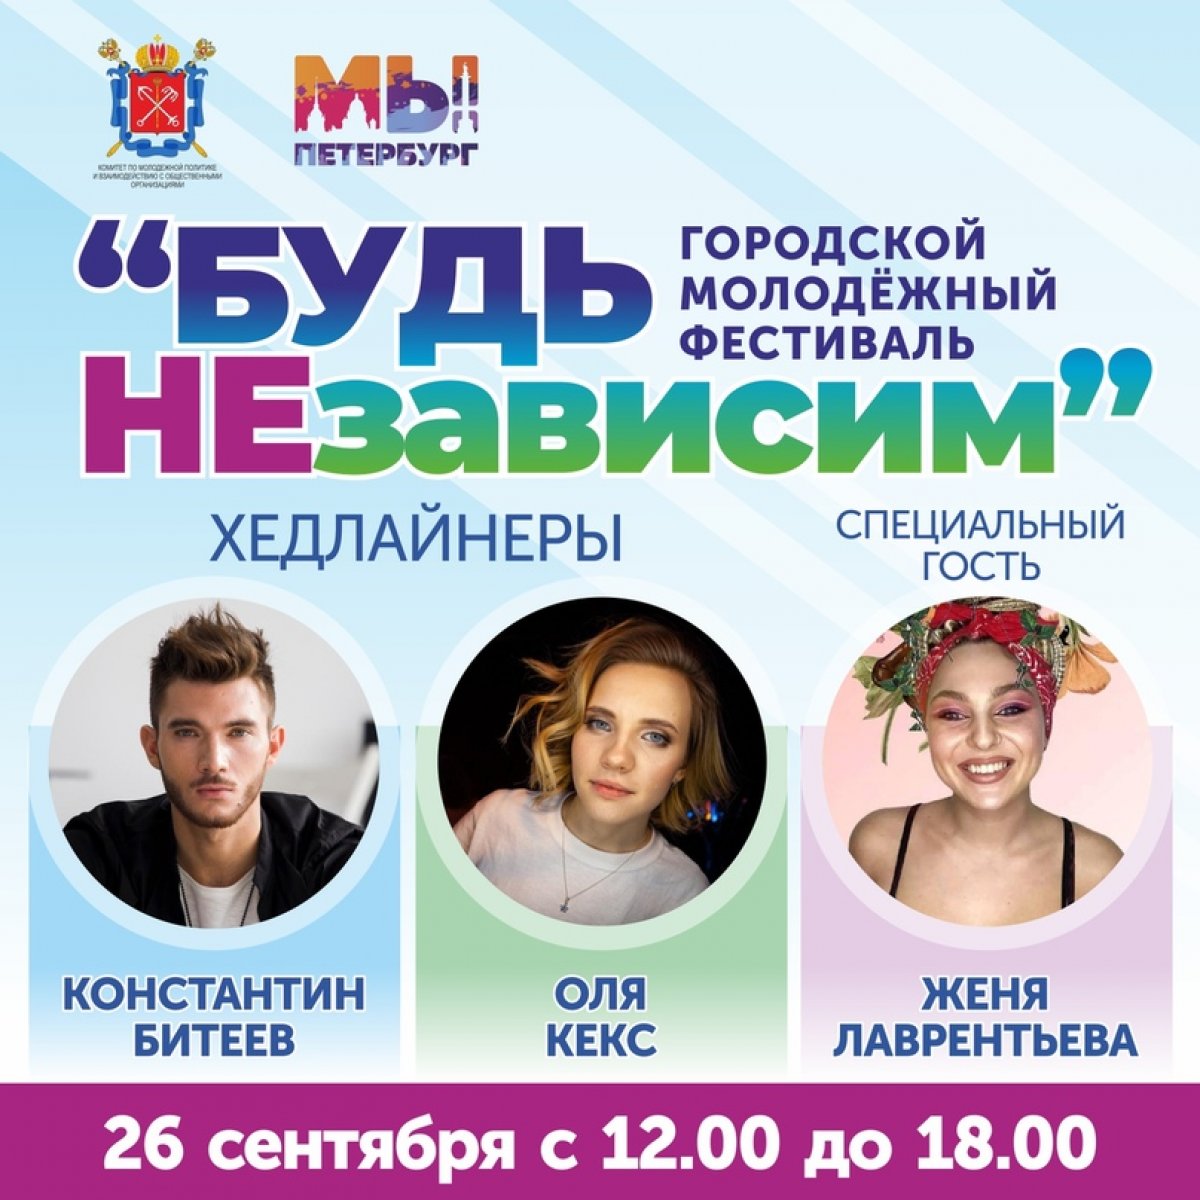 В Петербурге пройдет городской молодежный фестиваль